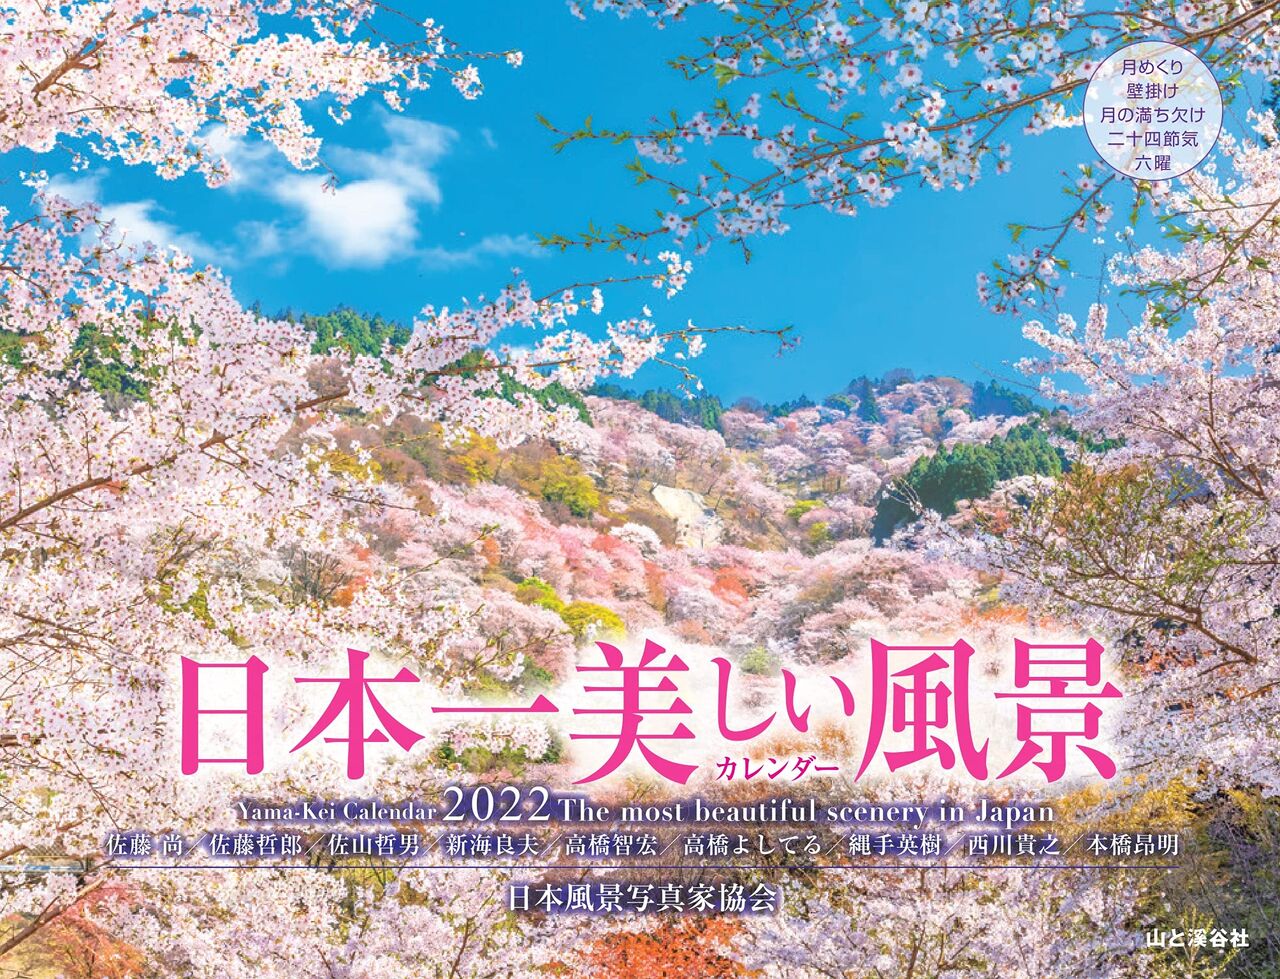 22年のカレンダー 日本一美しい風景 風景写真家 西川貴之の気まぐれブログ